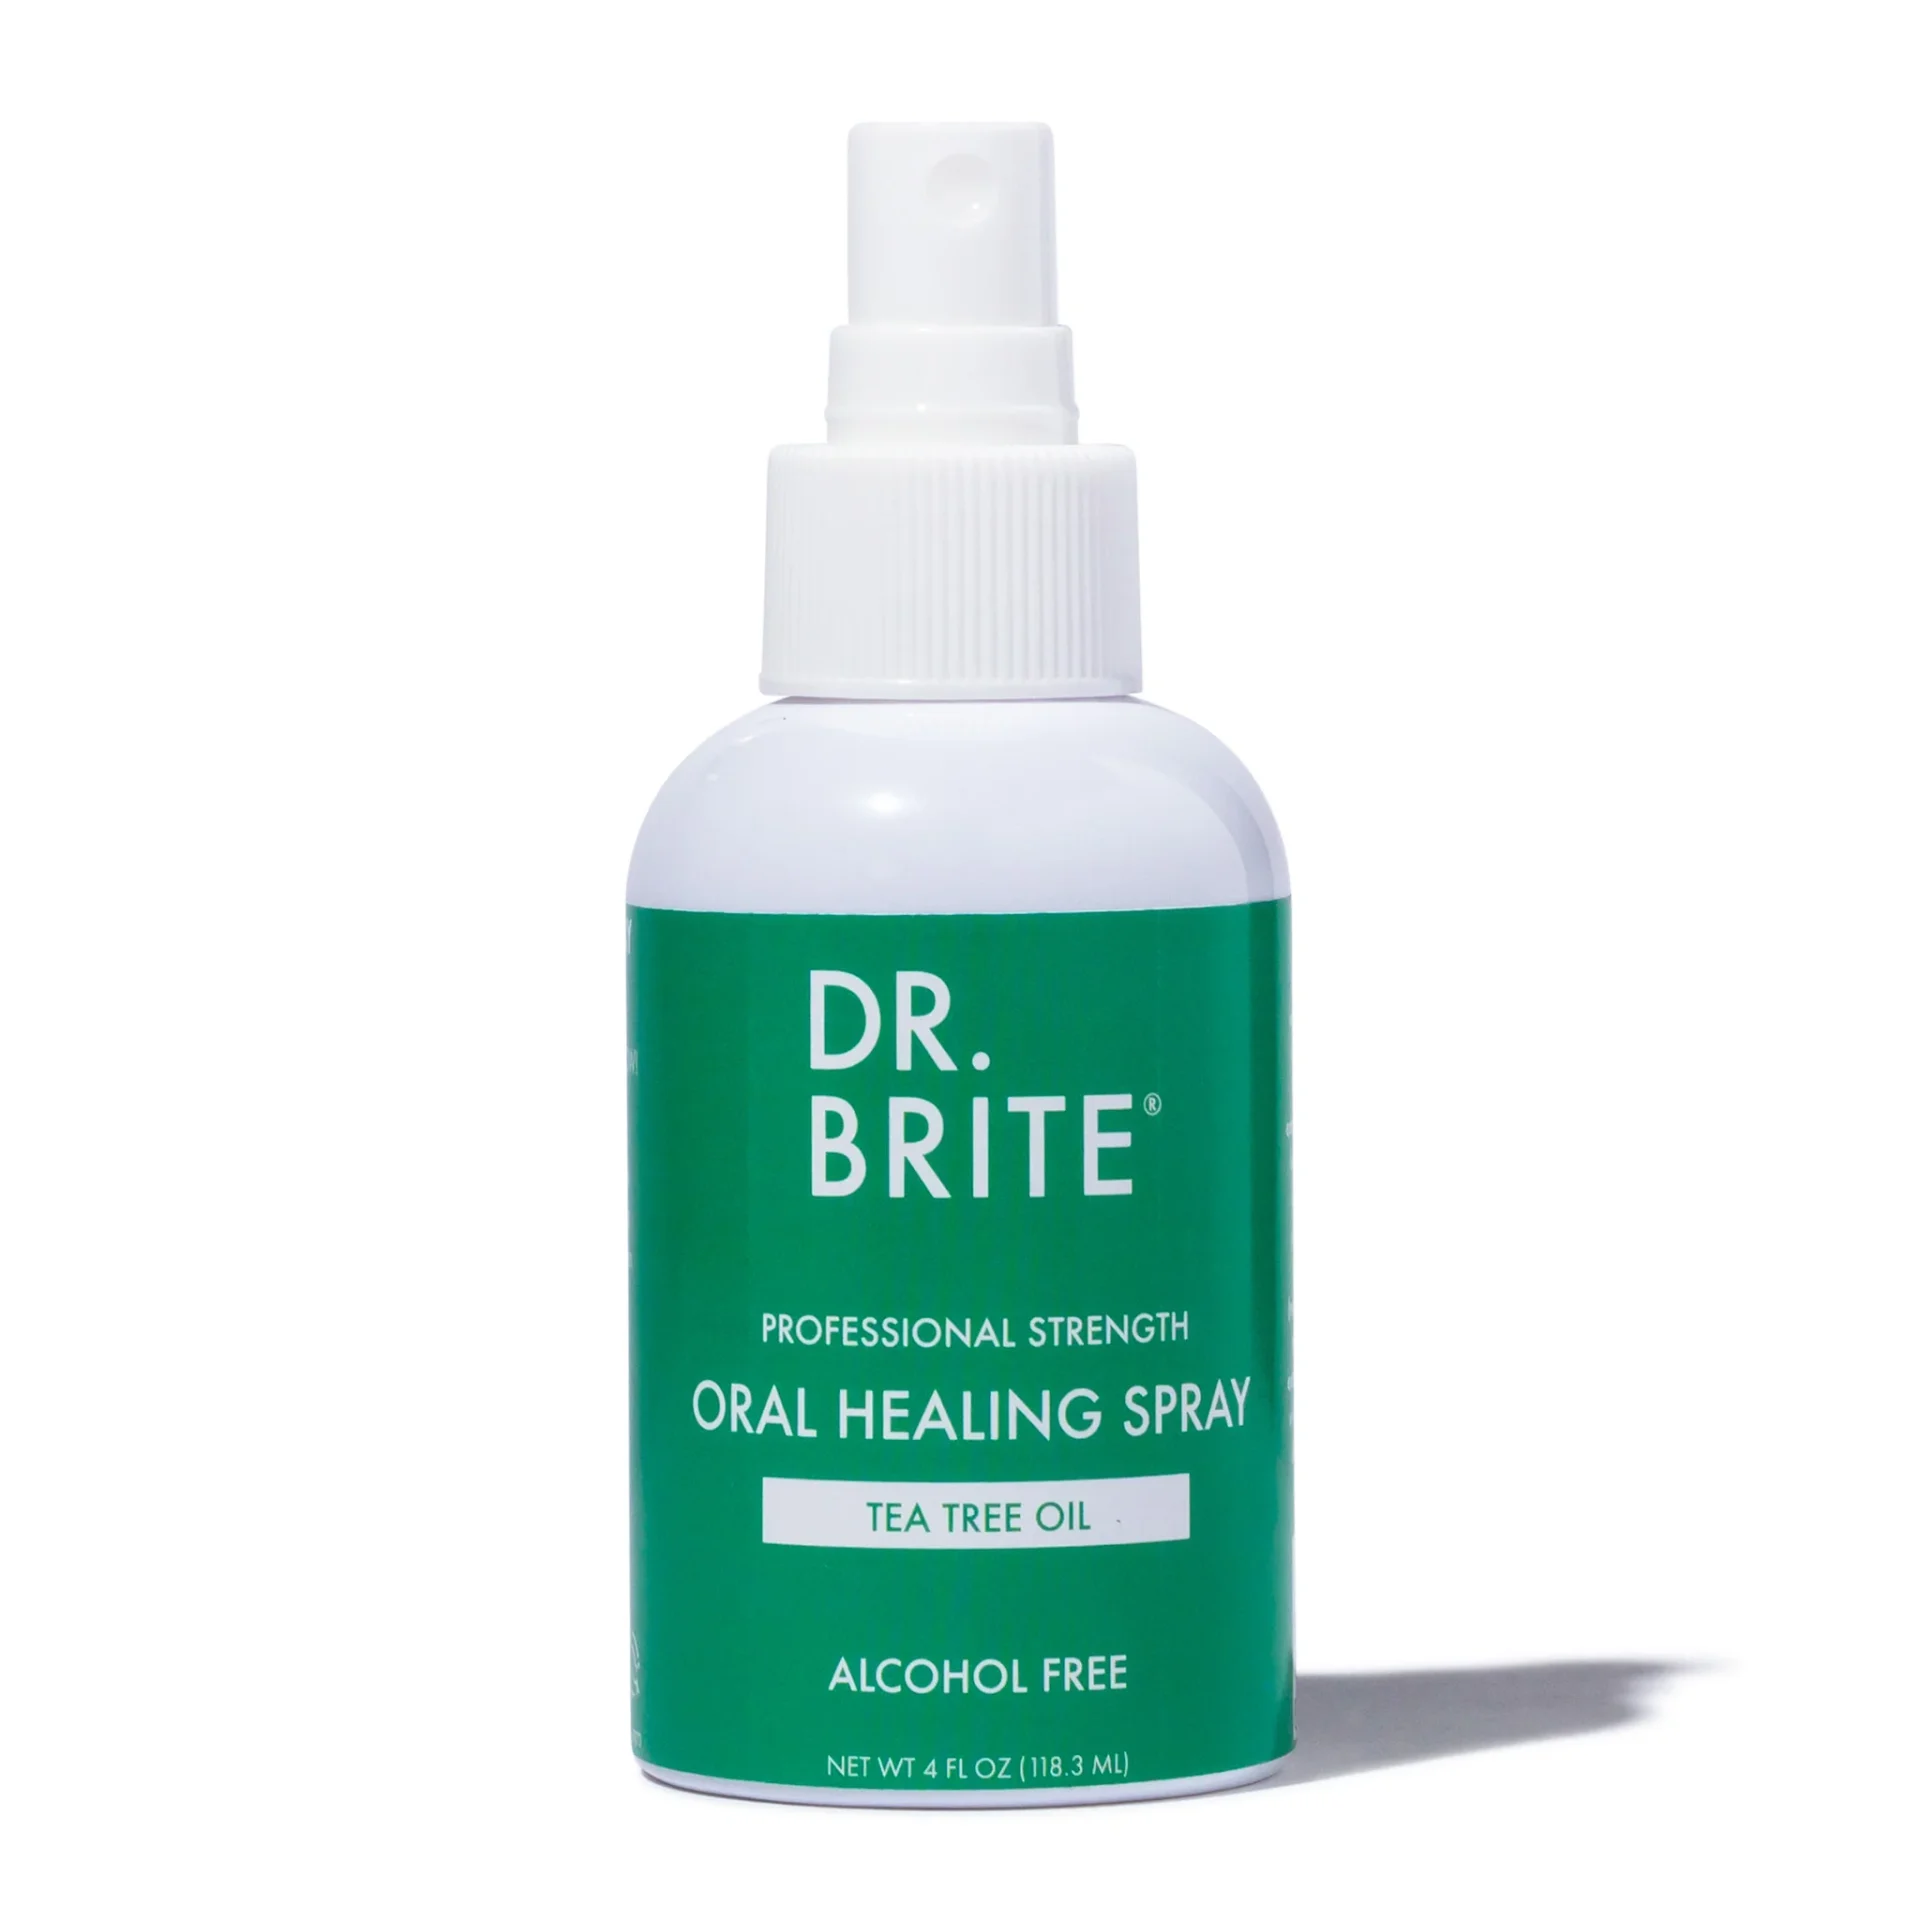 Dr. Brite oral healing spray promo code